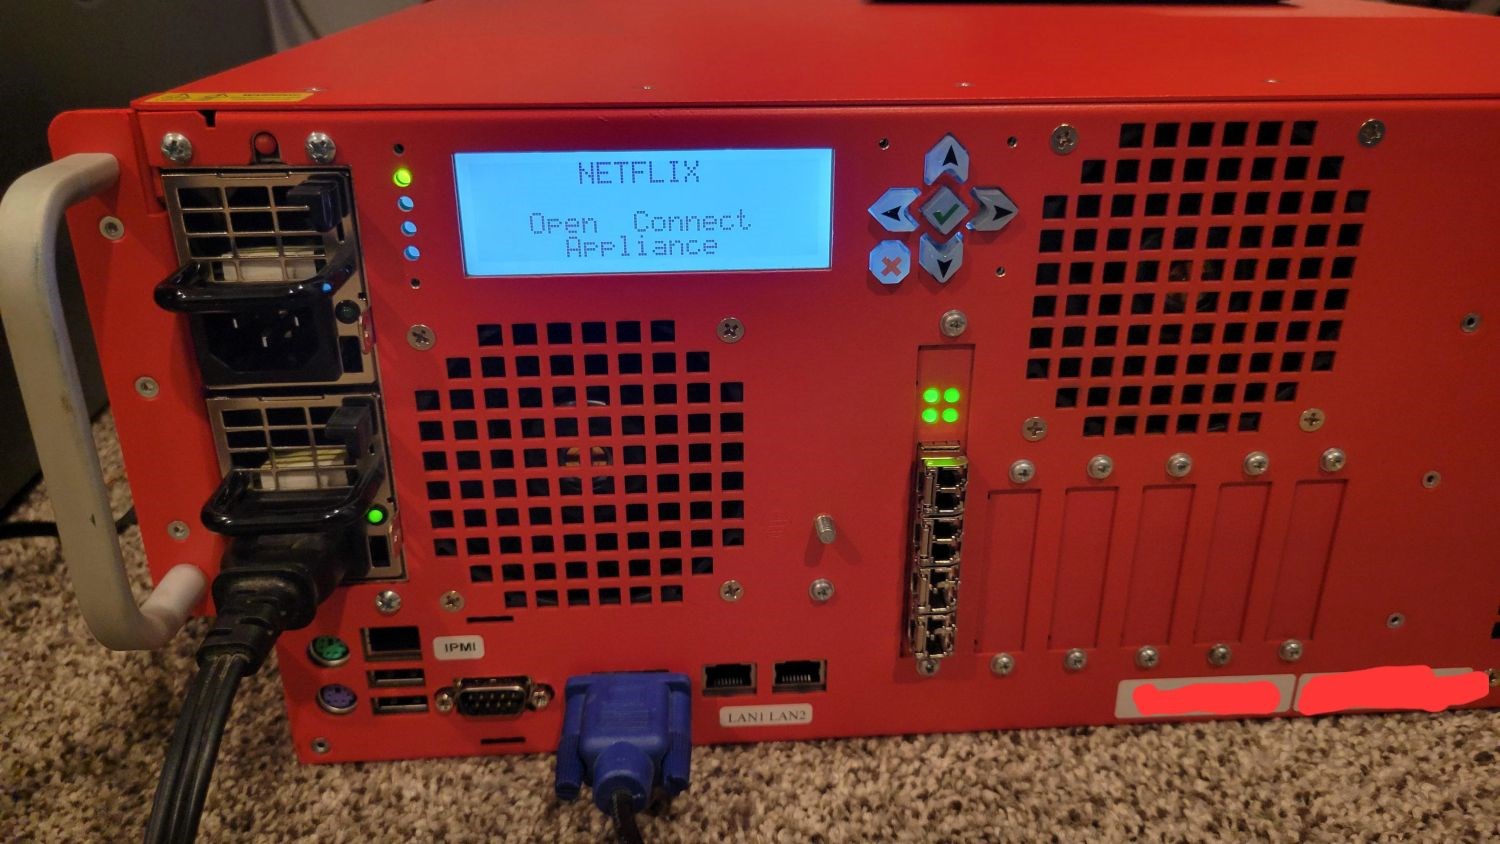 Reddit kullanıcısı, 262 TB'lik Netflix sunucusunu satın aldı